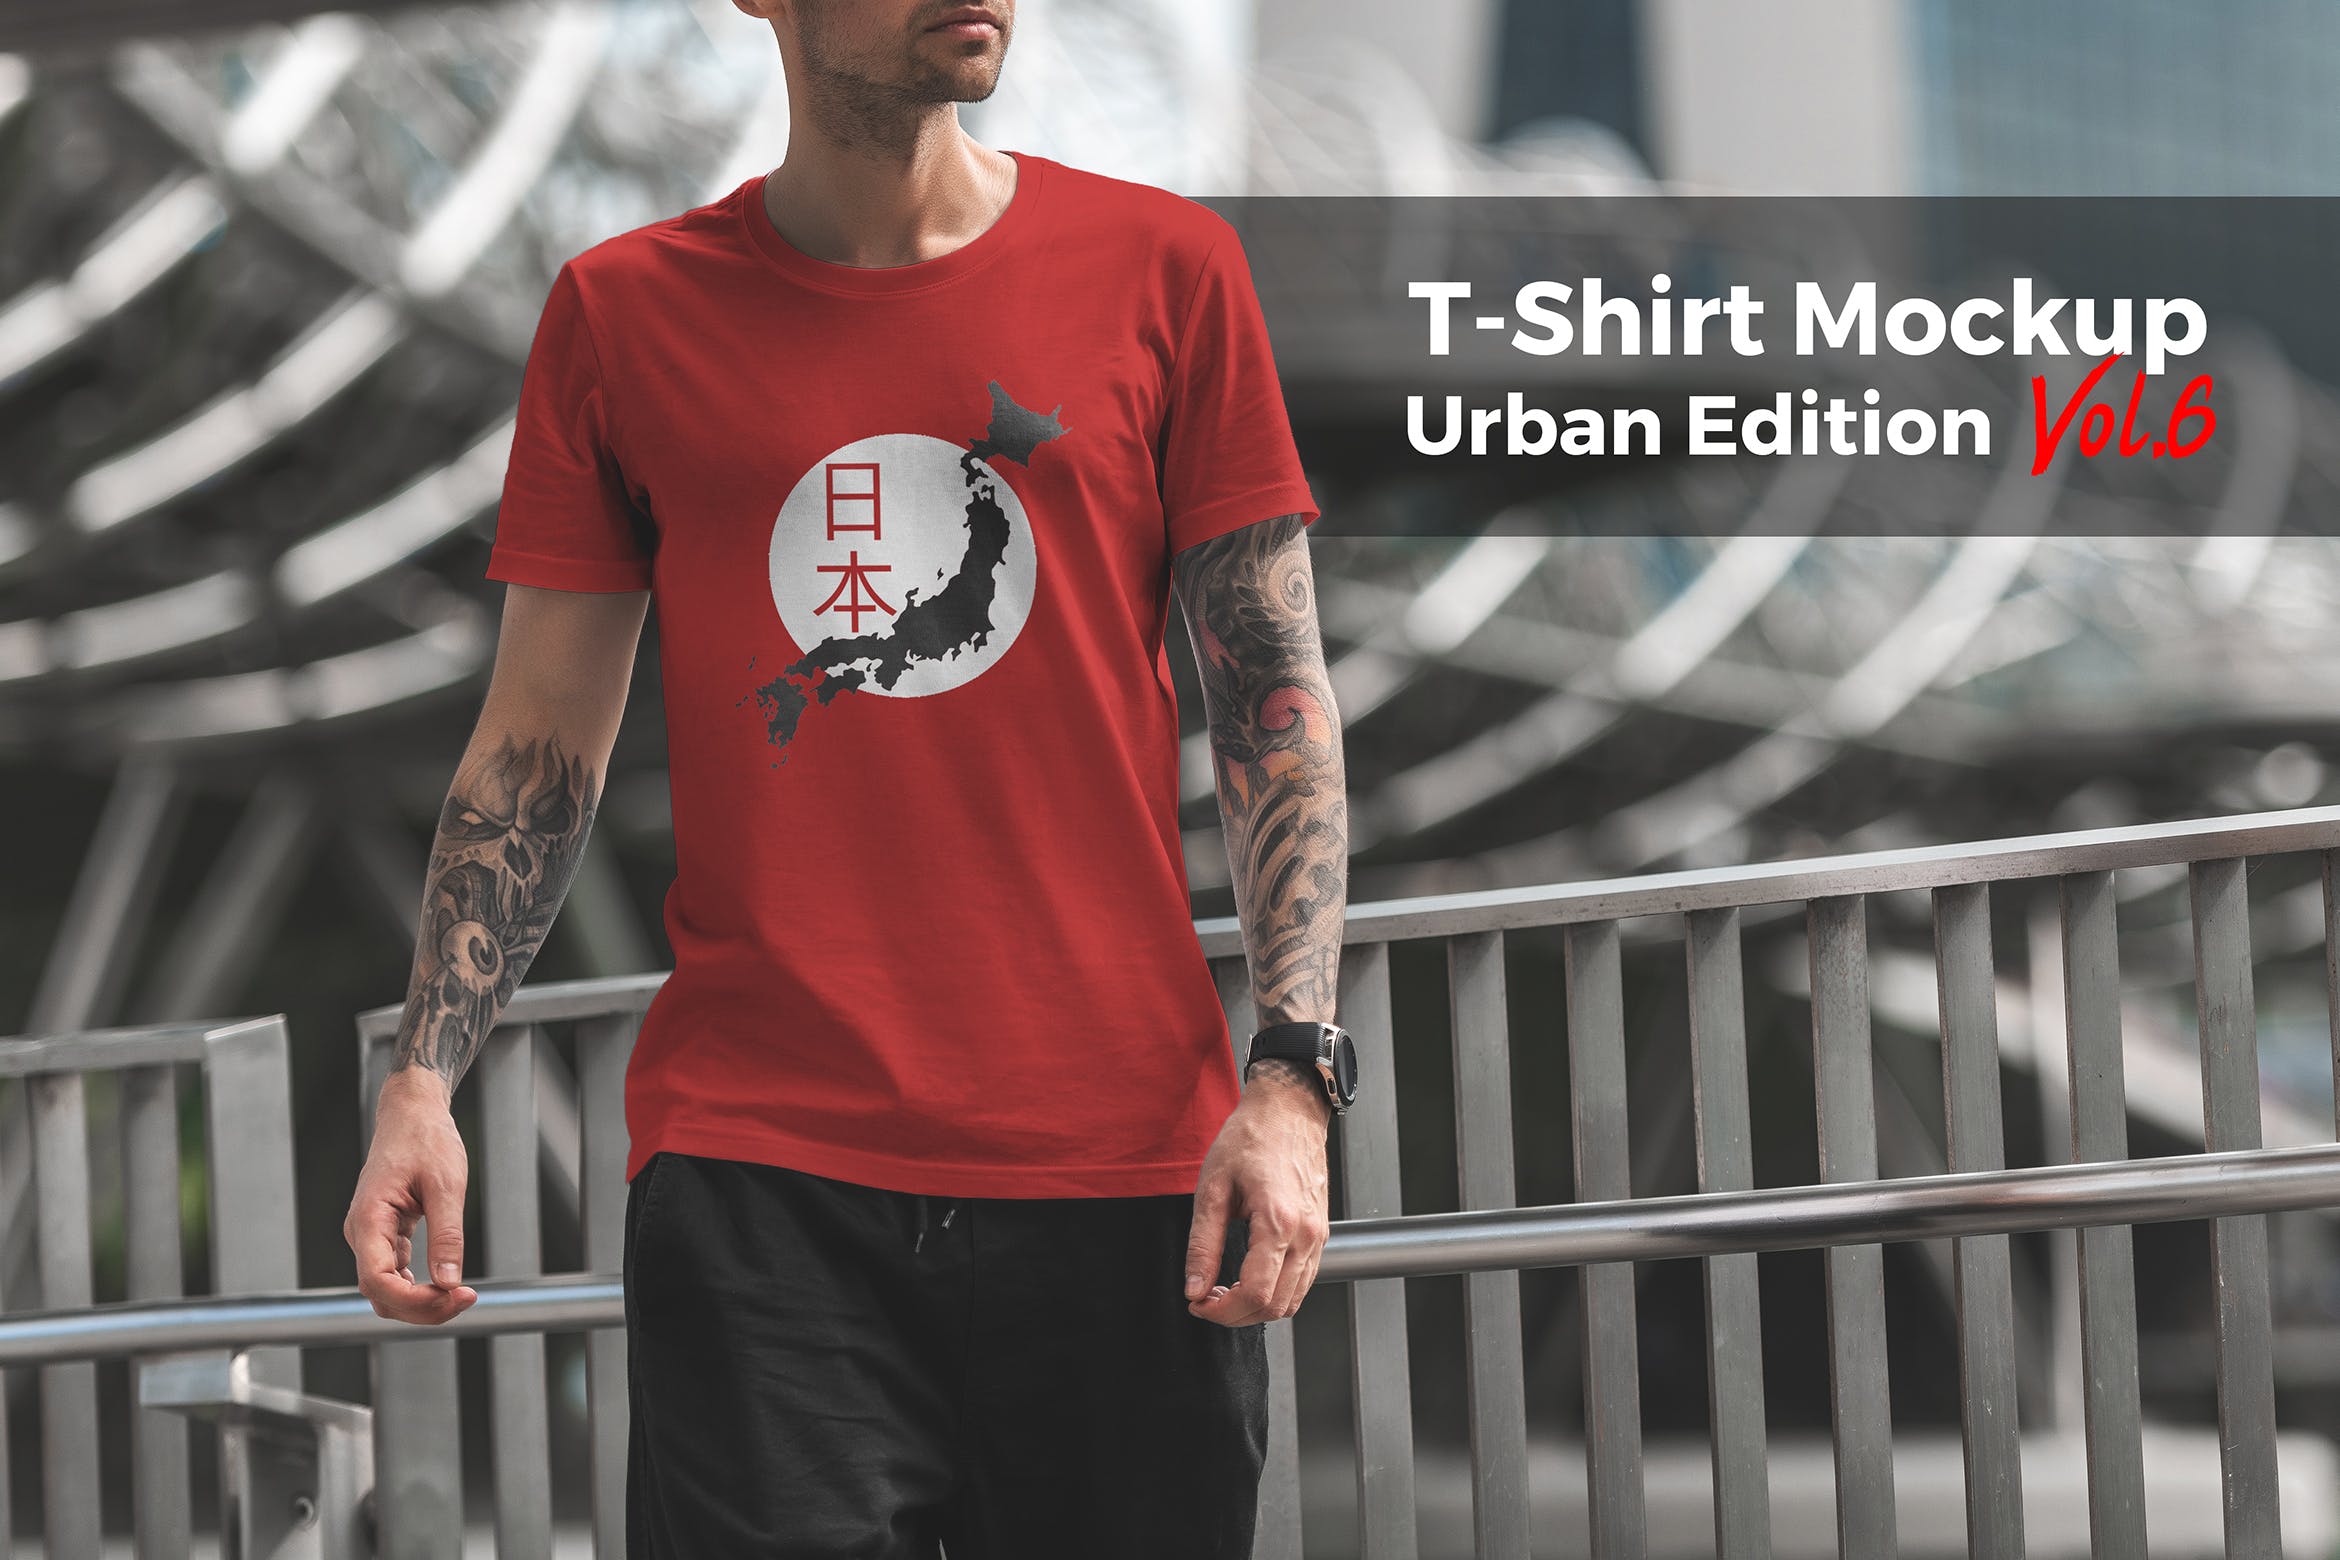 城市系列-印花T恤产品展示样机大洋岛精选模板v6 T-Shirt Mockup Urban Edition Vol. 6插图